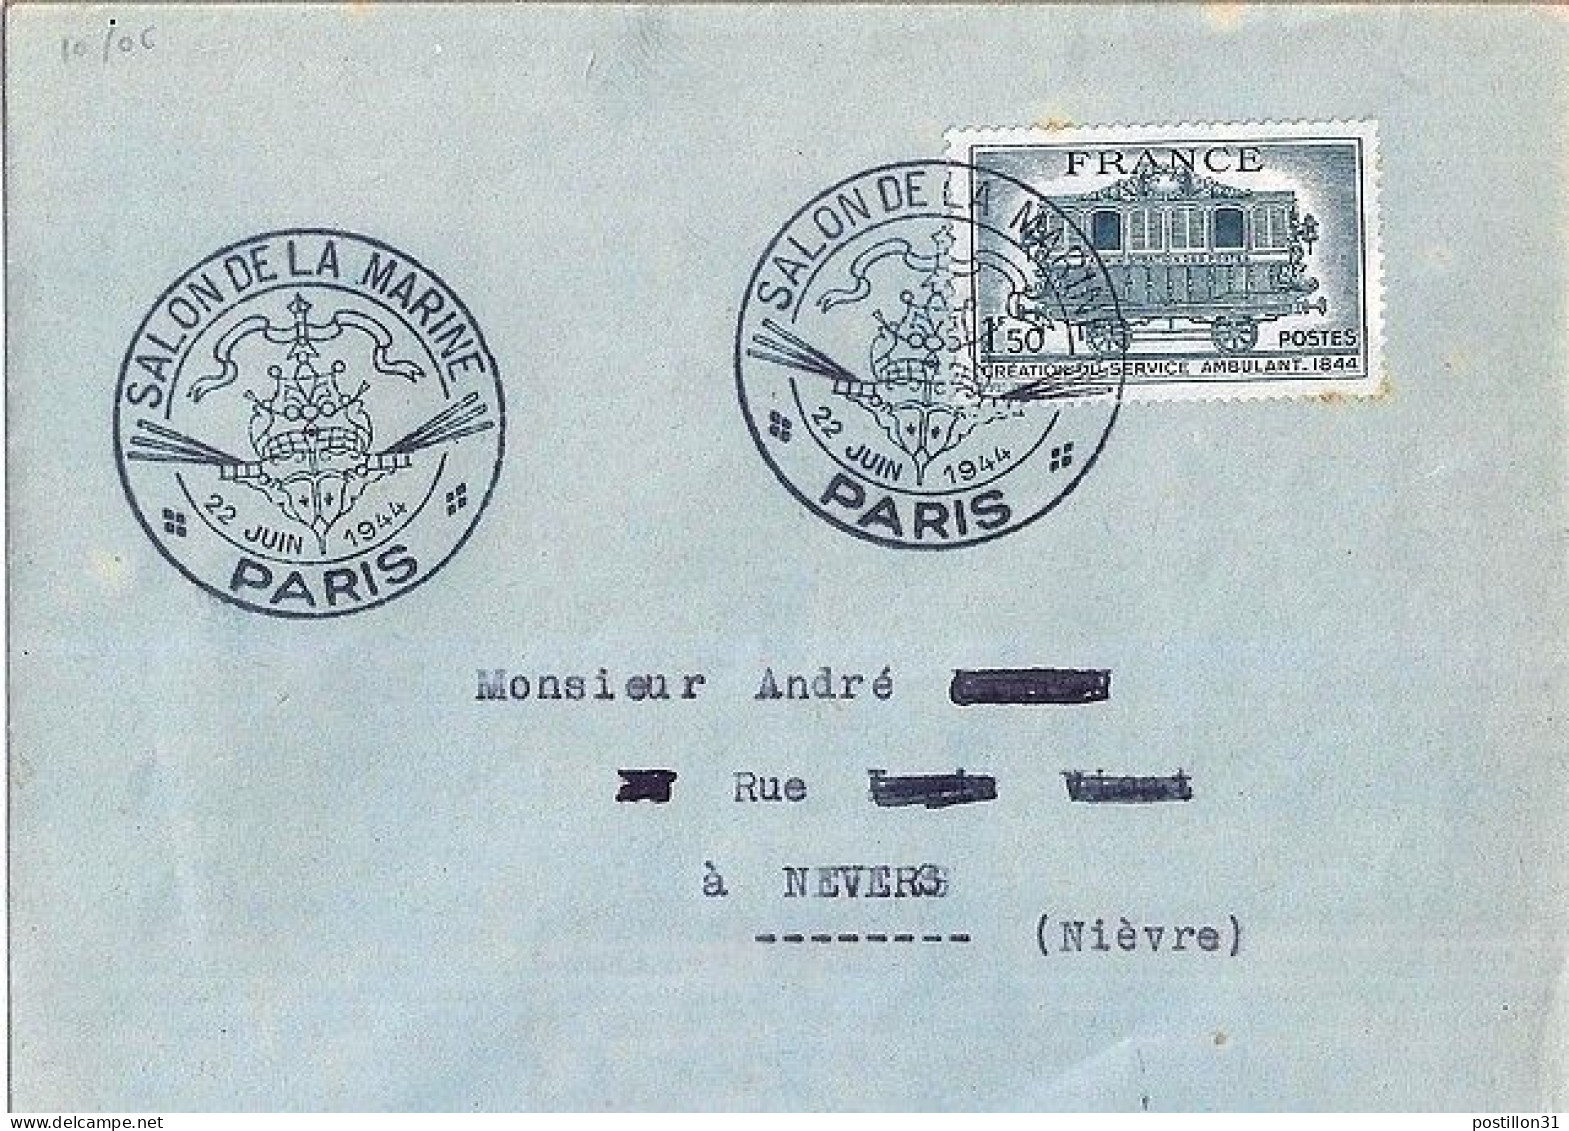 FRANCE N° 609 S/L. DE PARIS/SALON DE LA MARINE/22.6.44 - Storia Postale